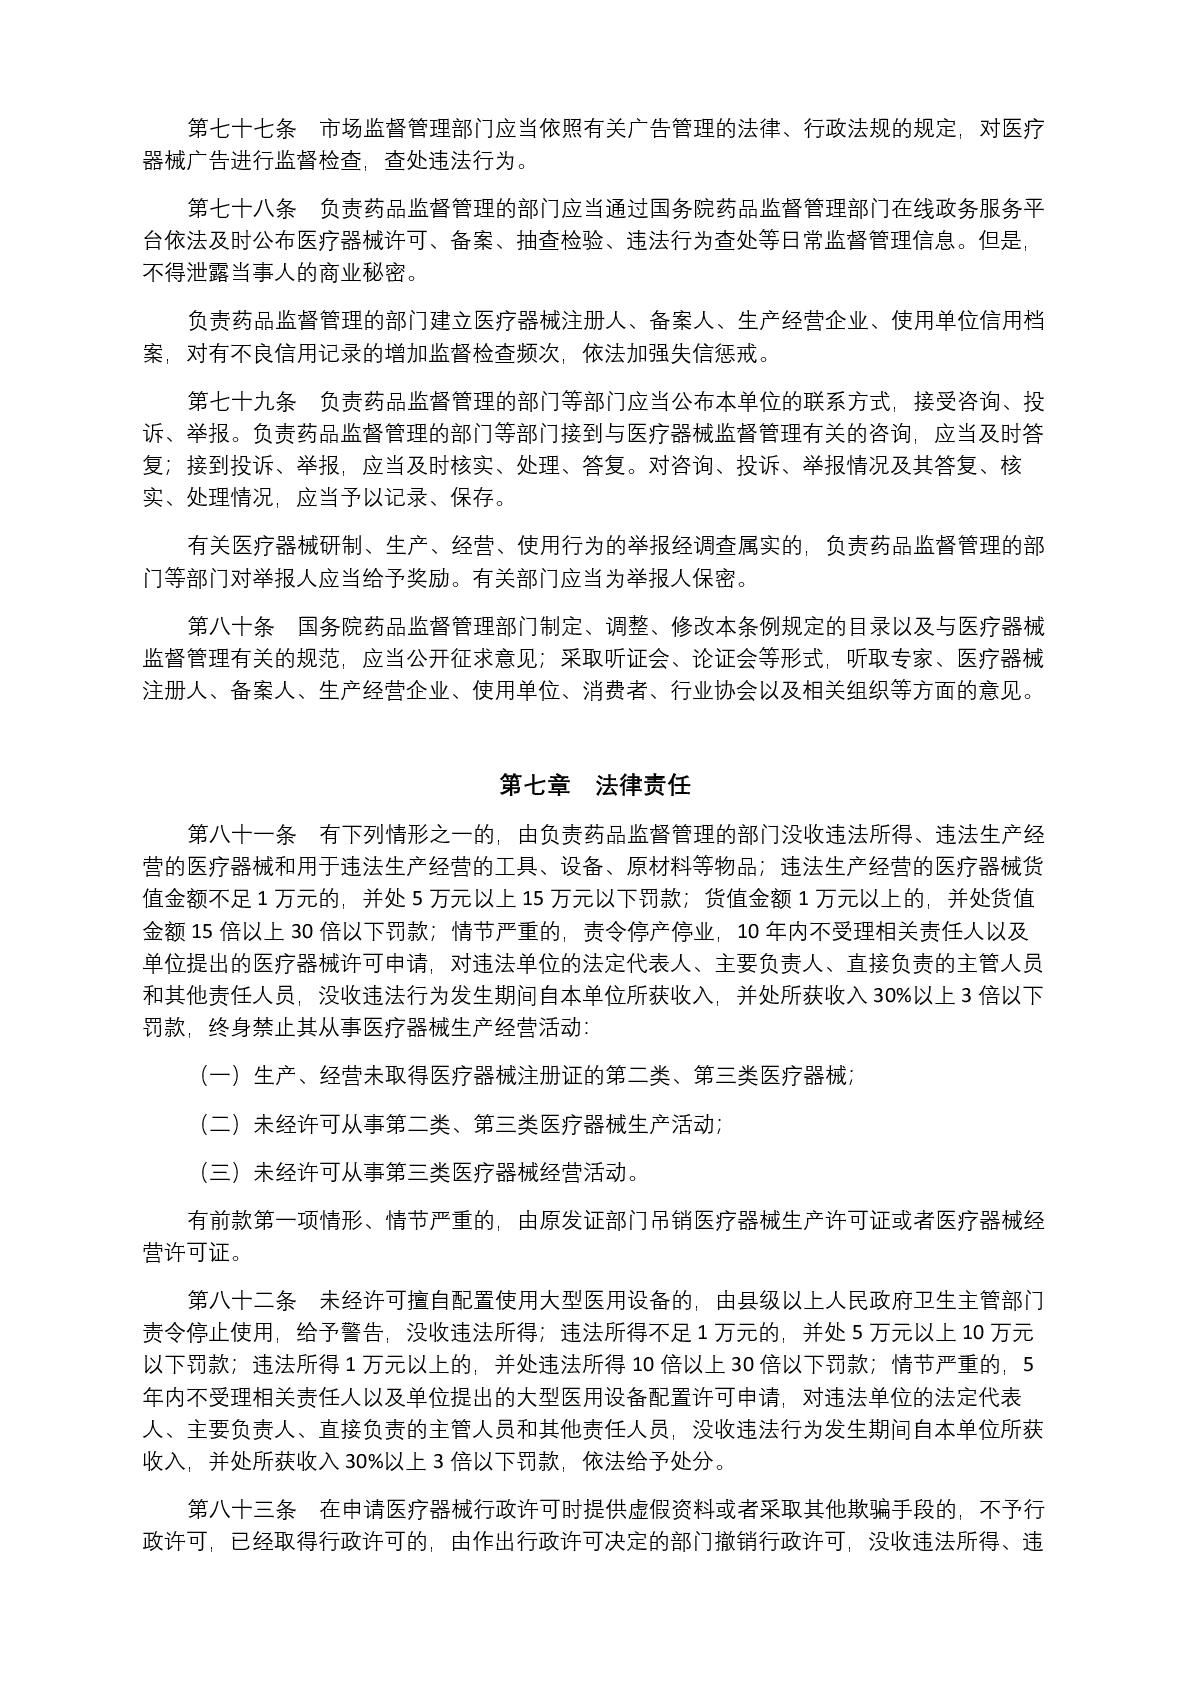 中华人民共和国国务院令第739号(1) (1)-014.jpg